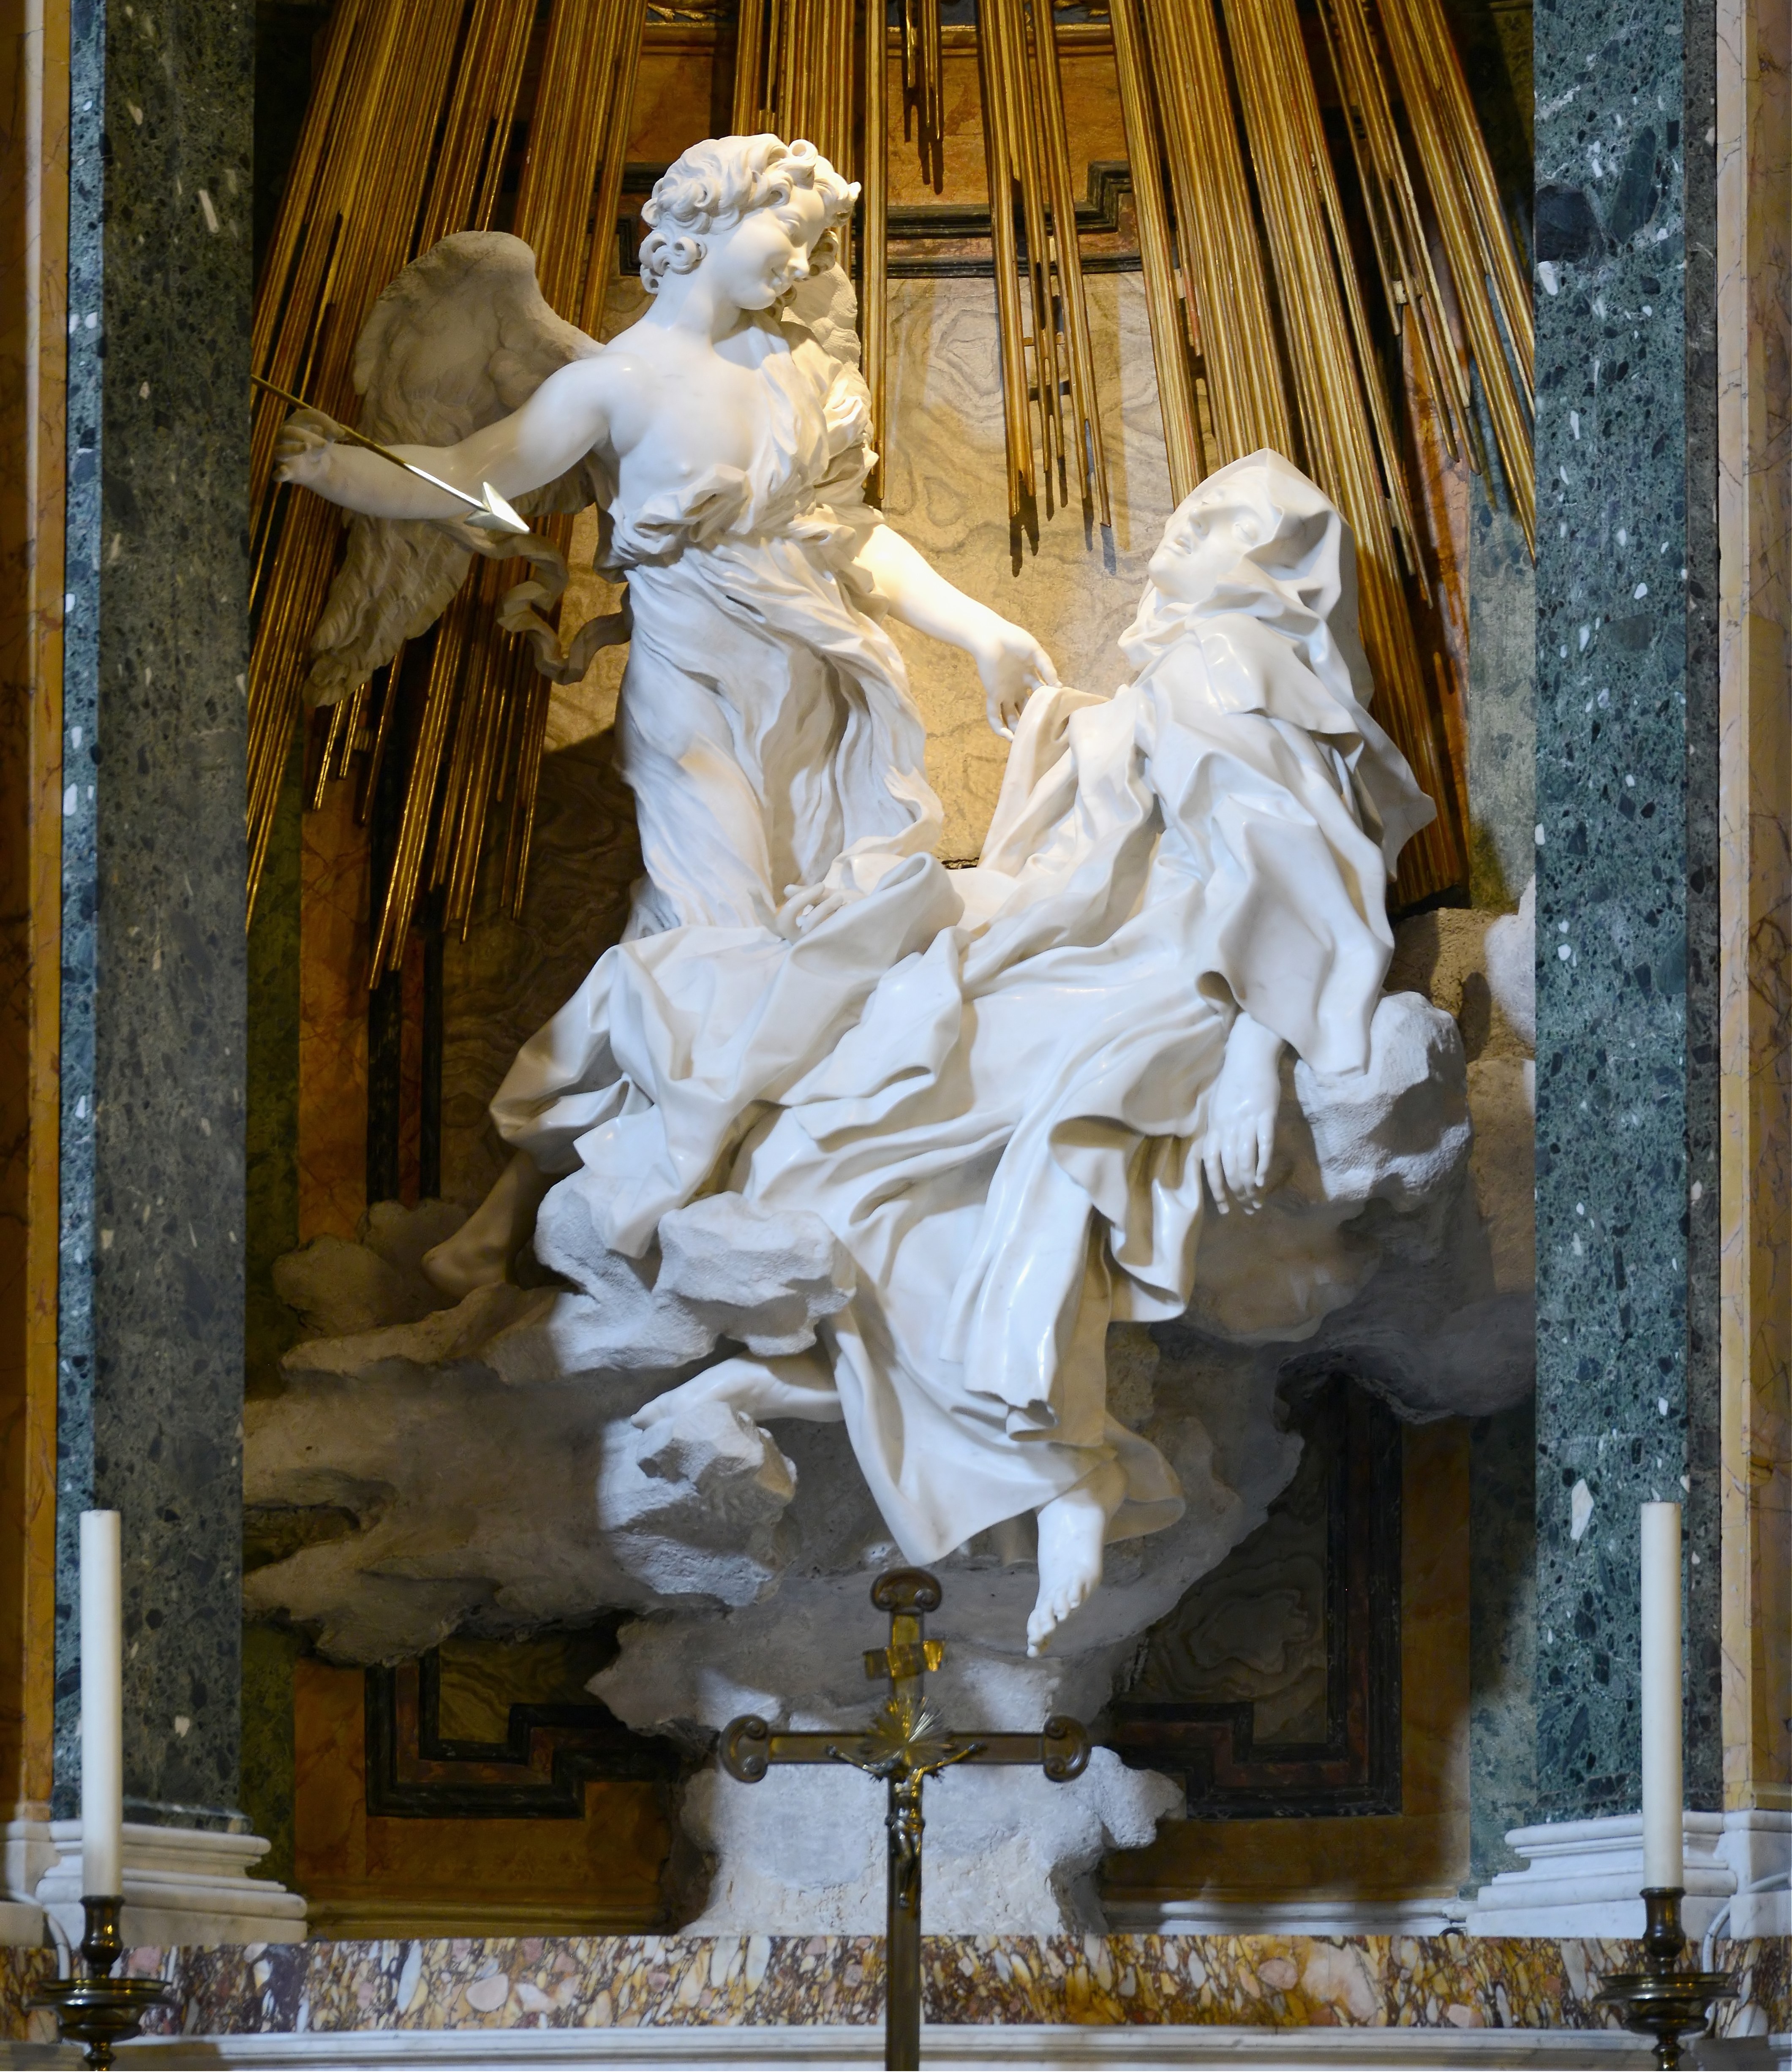 Ecstasy of St Teresa by Bernini